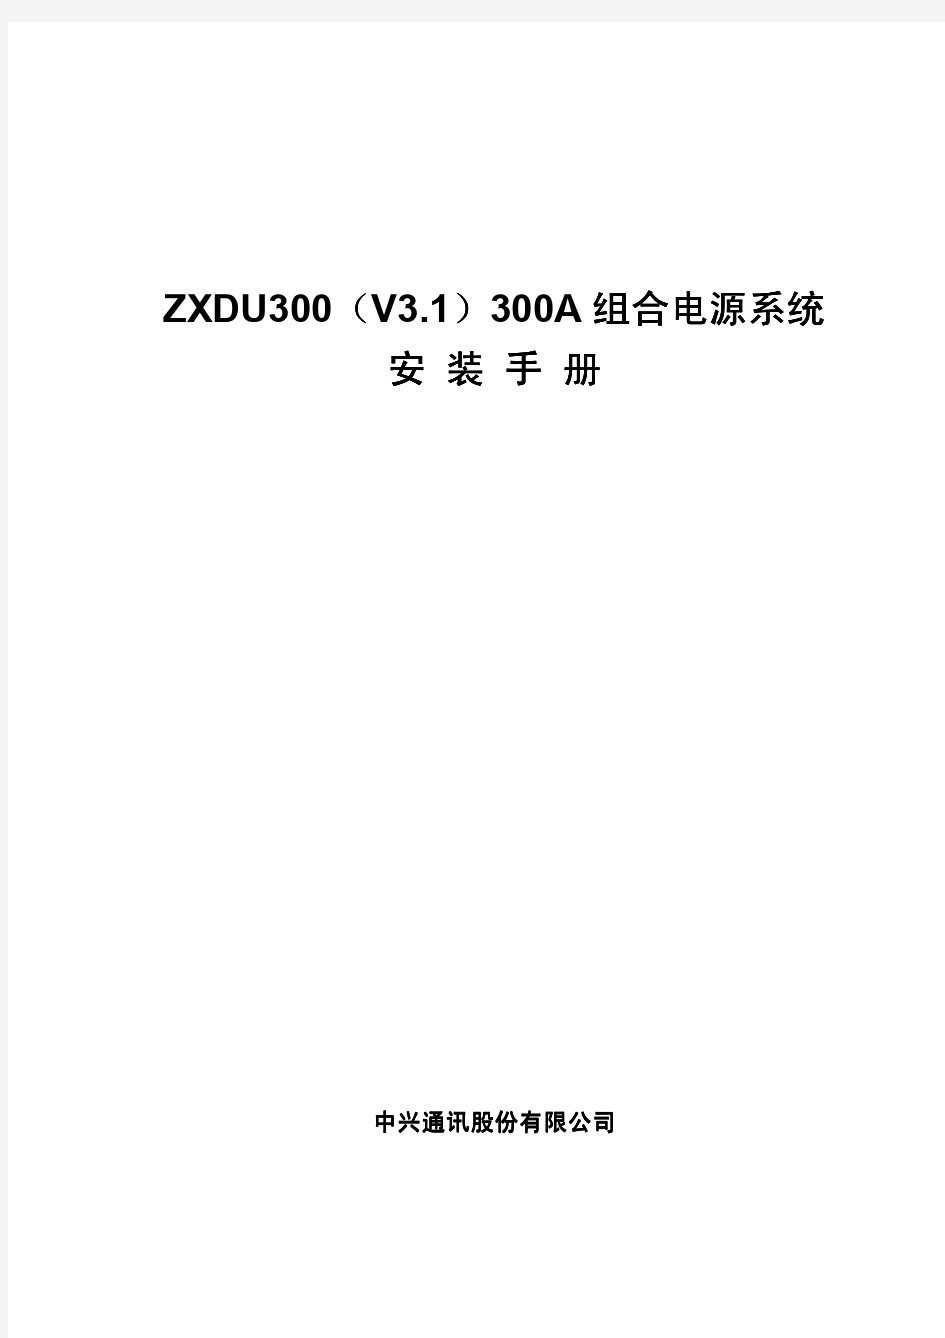 ZXDU300(V3.1)300A_组合电源系统安装手册